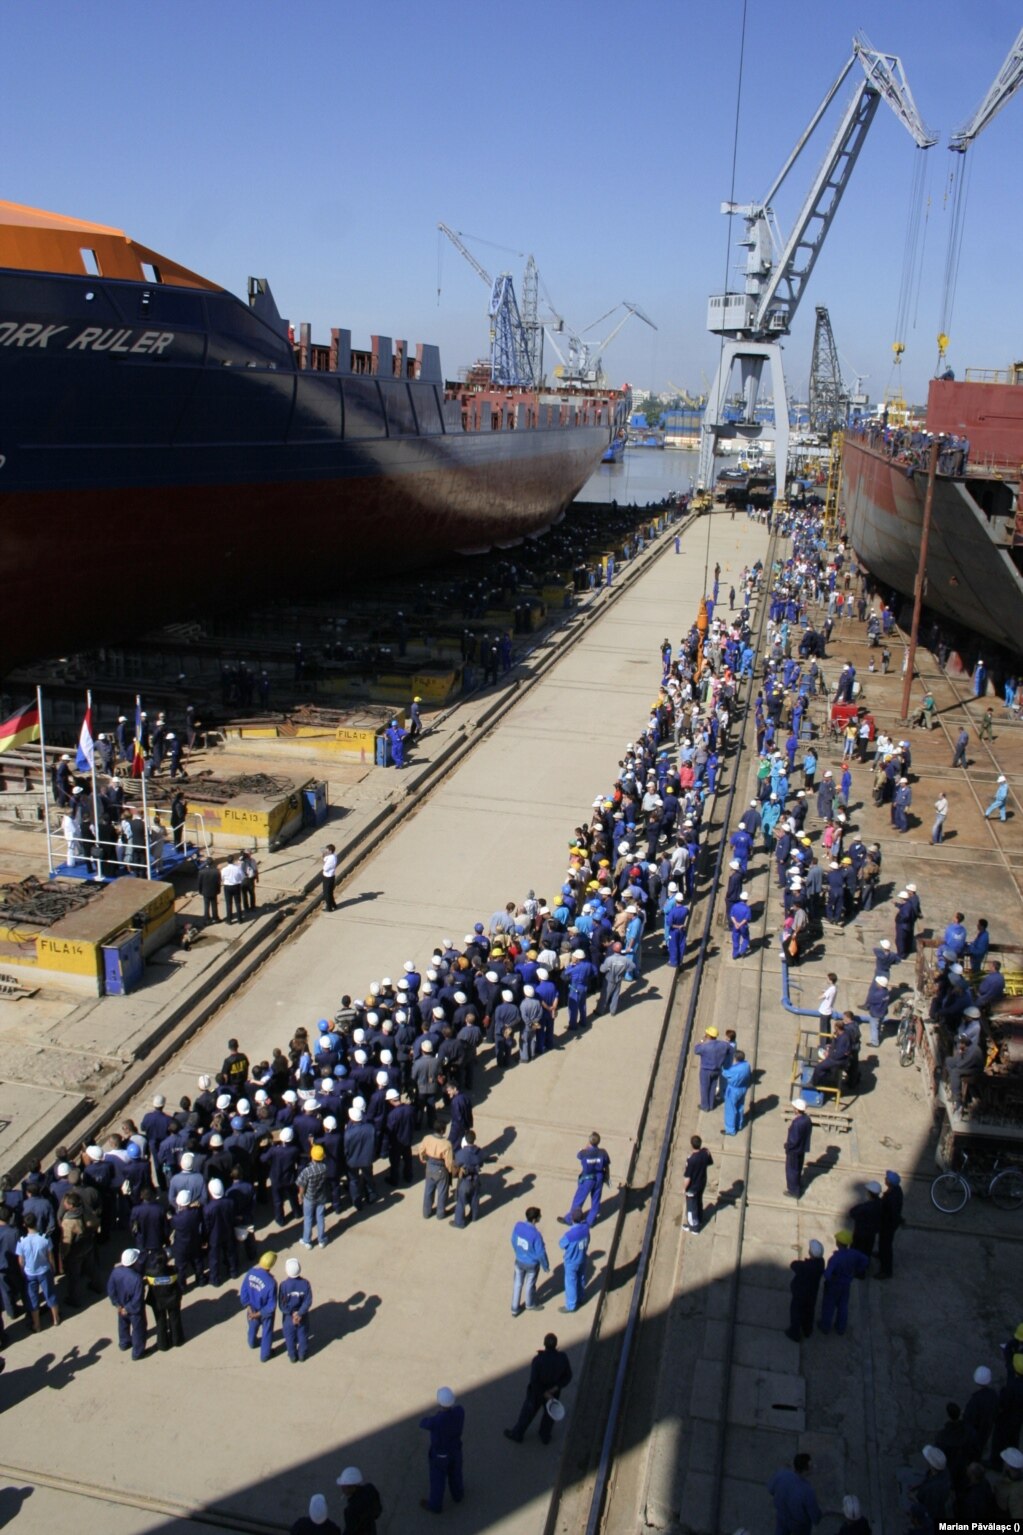 Damen a început să construiască nave militare în Galați după criza economică din 2009, când au scăzut comenzile pentru navele de transport de tip container.